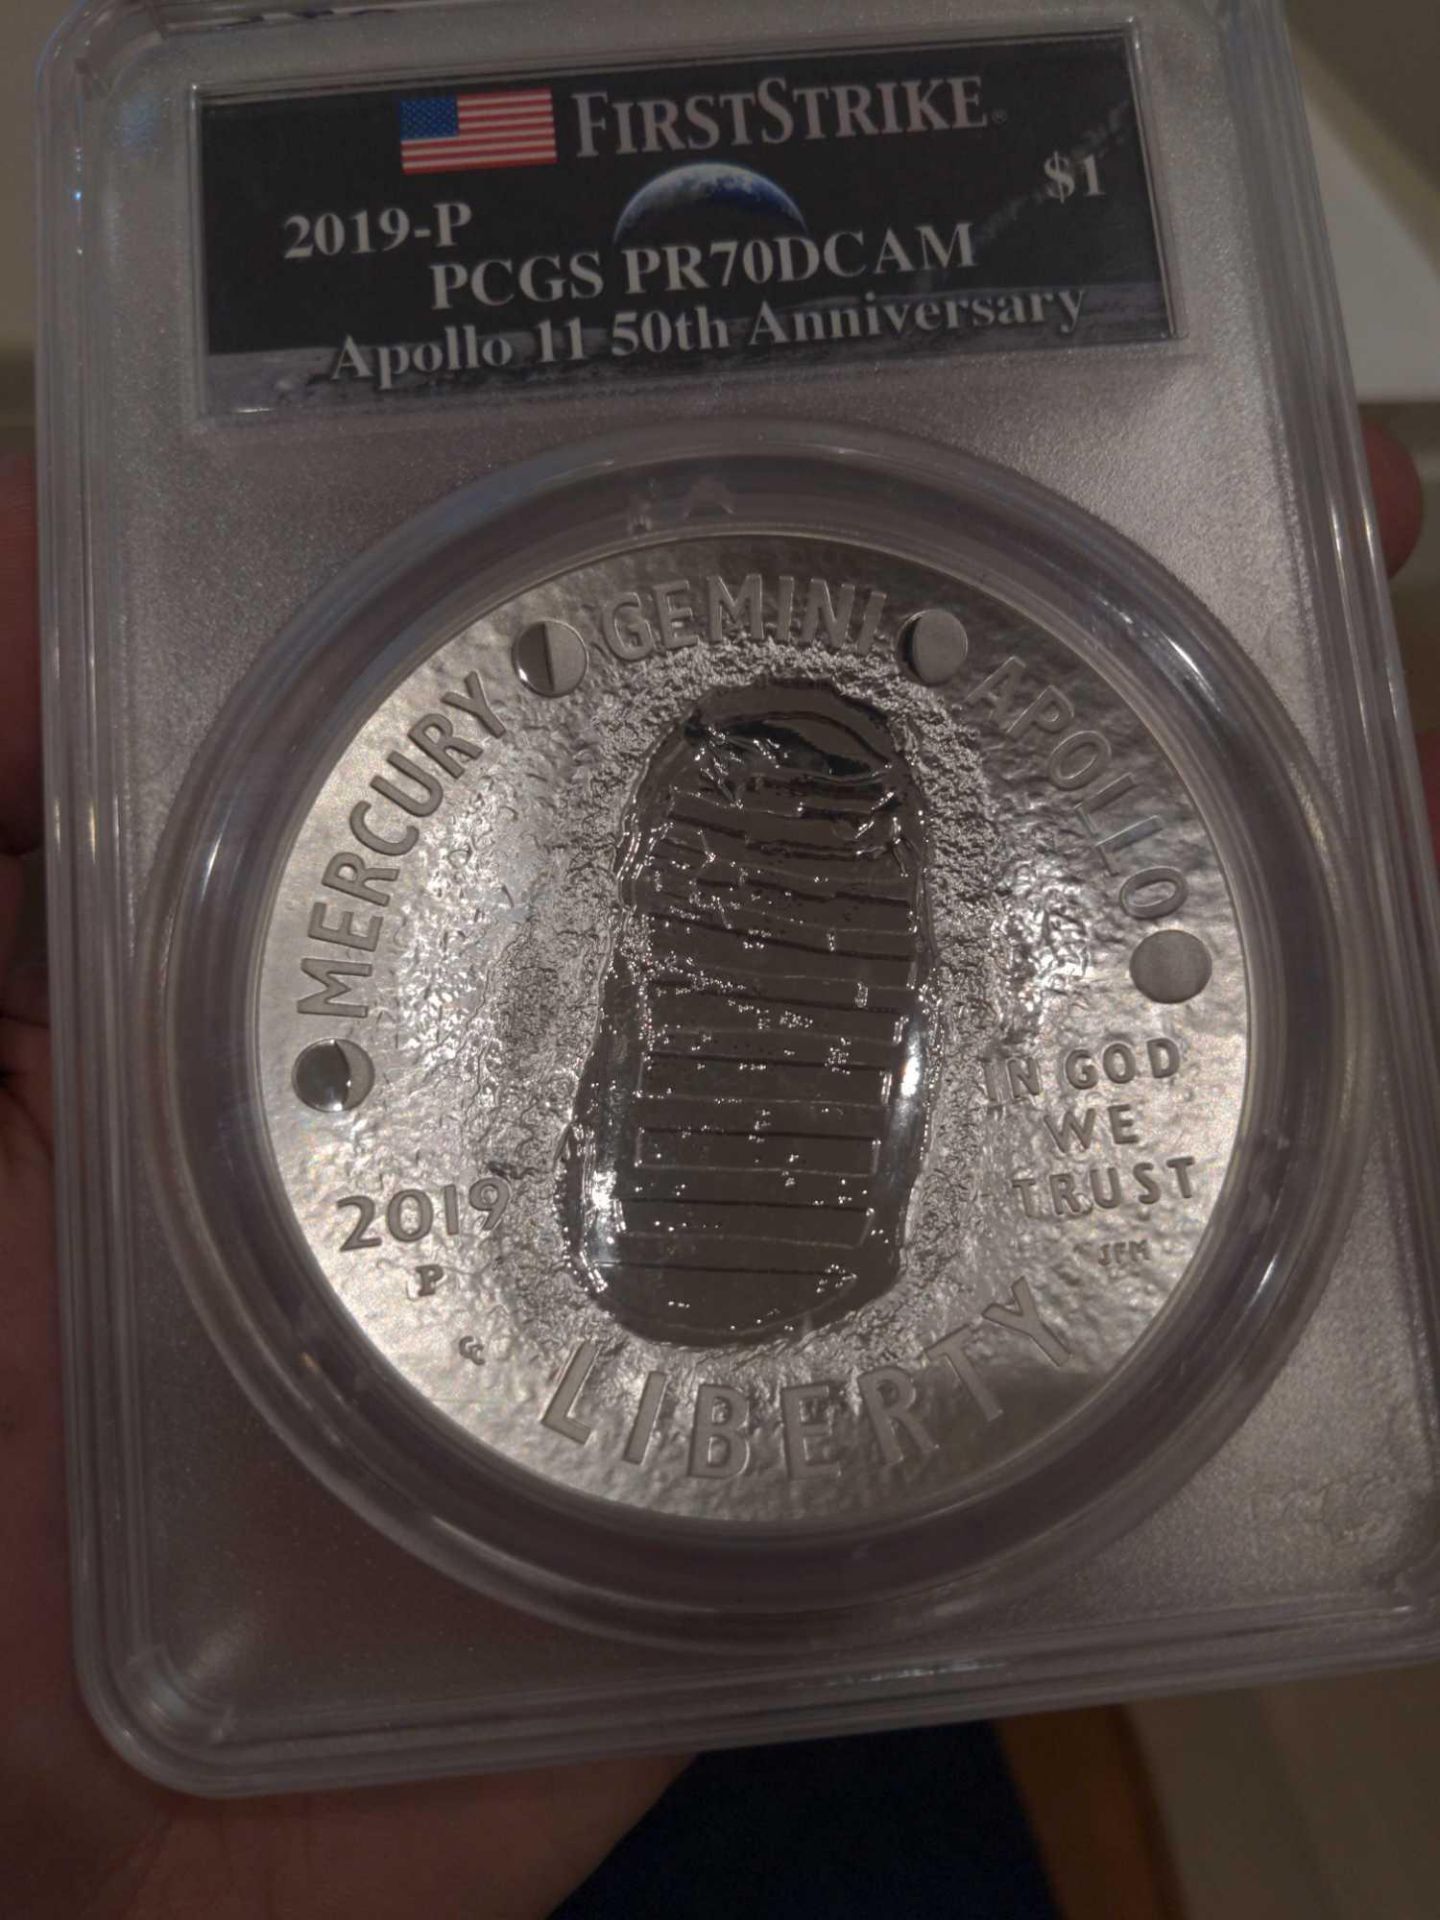 Apollo 11 50th Anniversary 5 oz Coin - Image 4 of 4